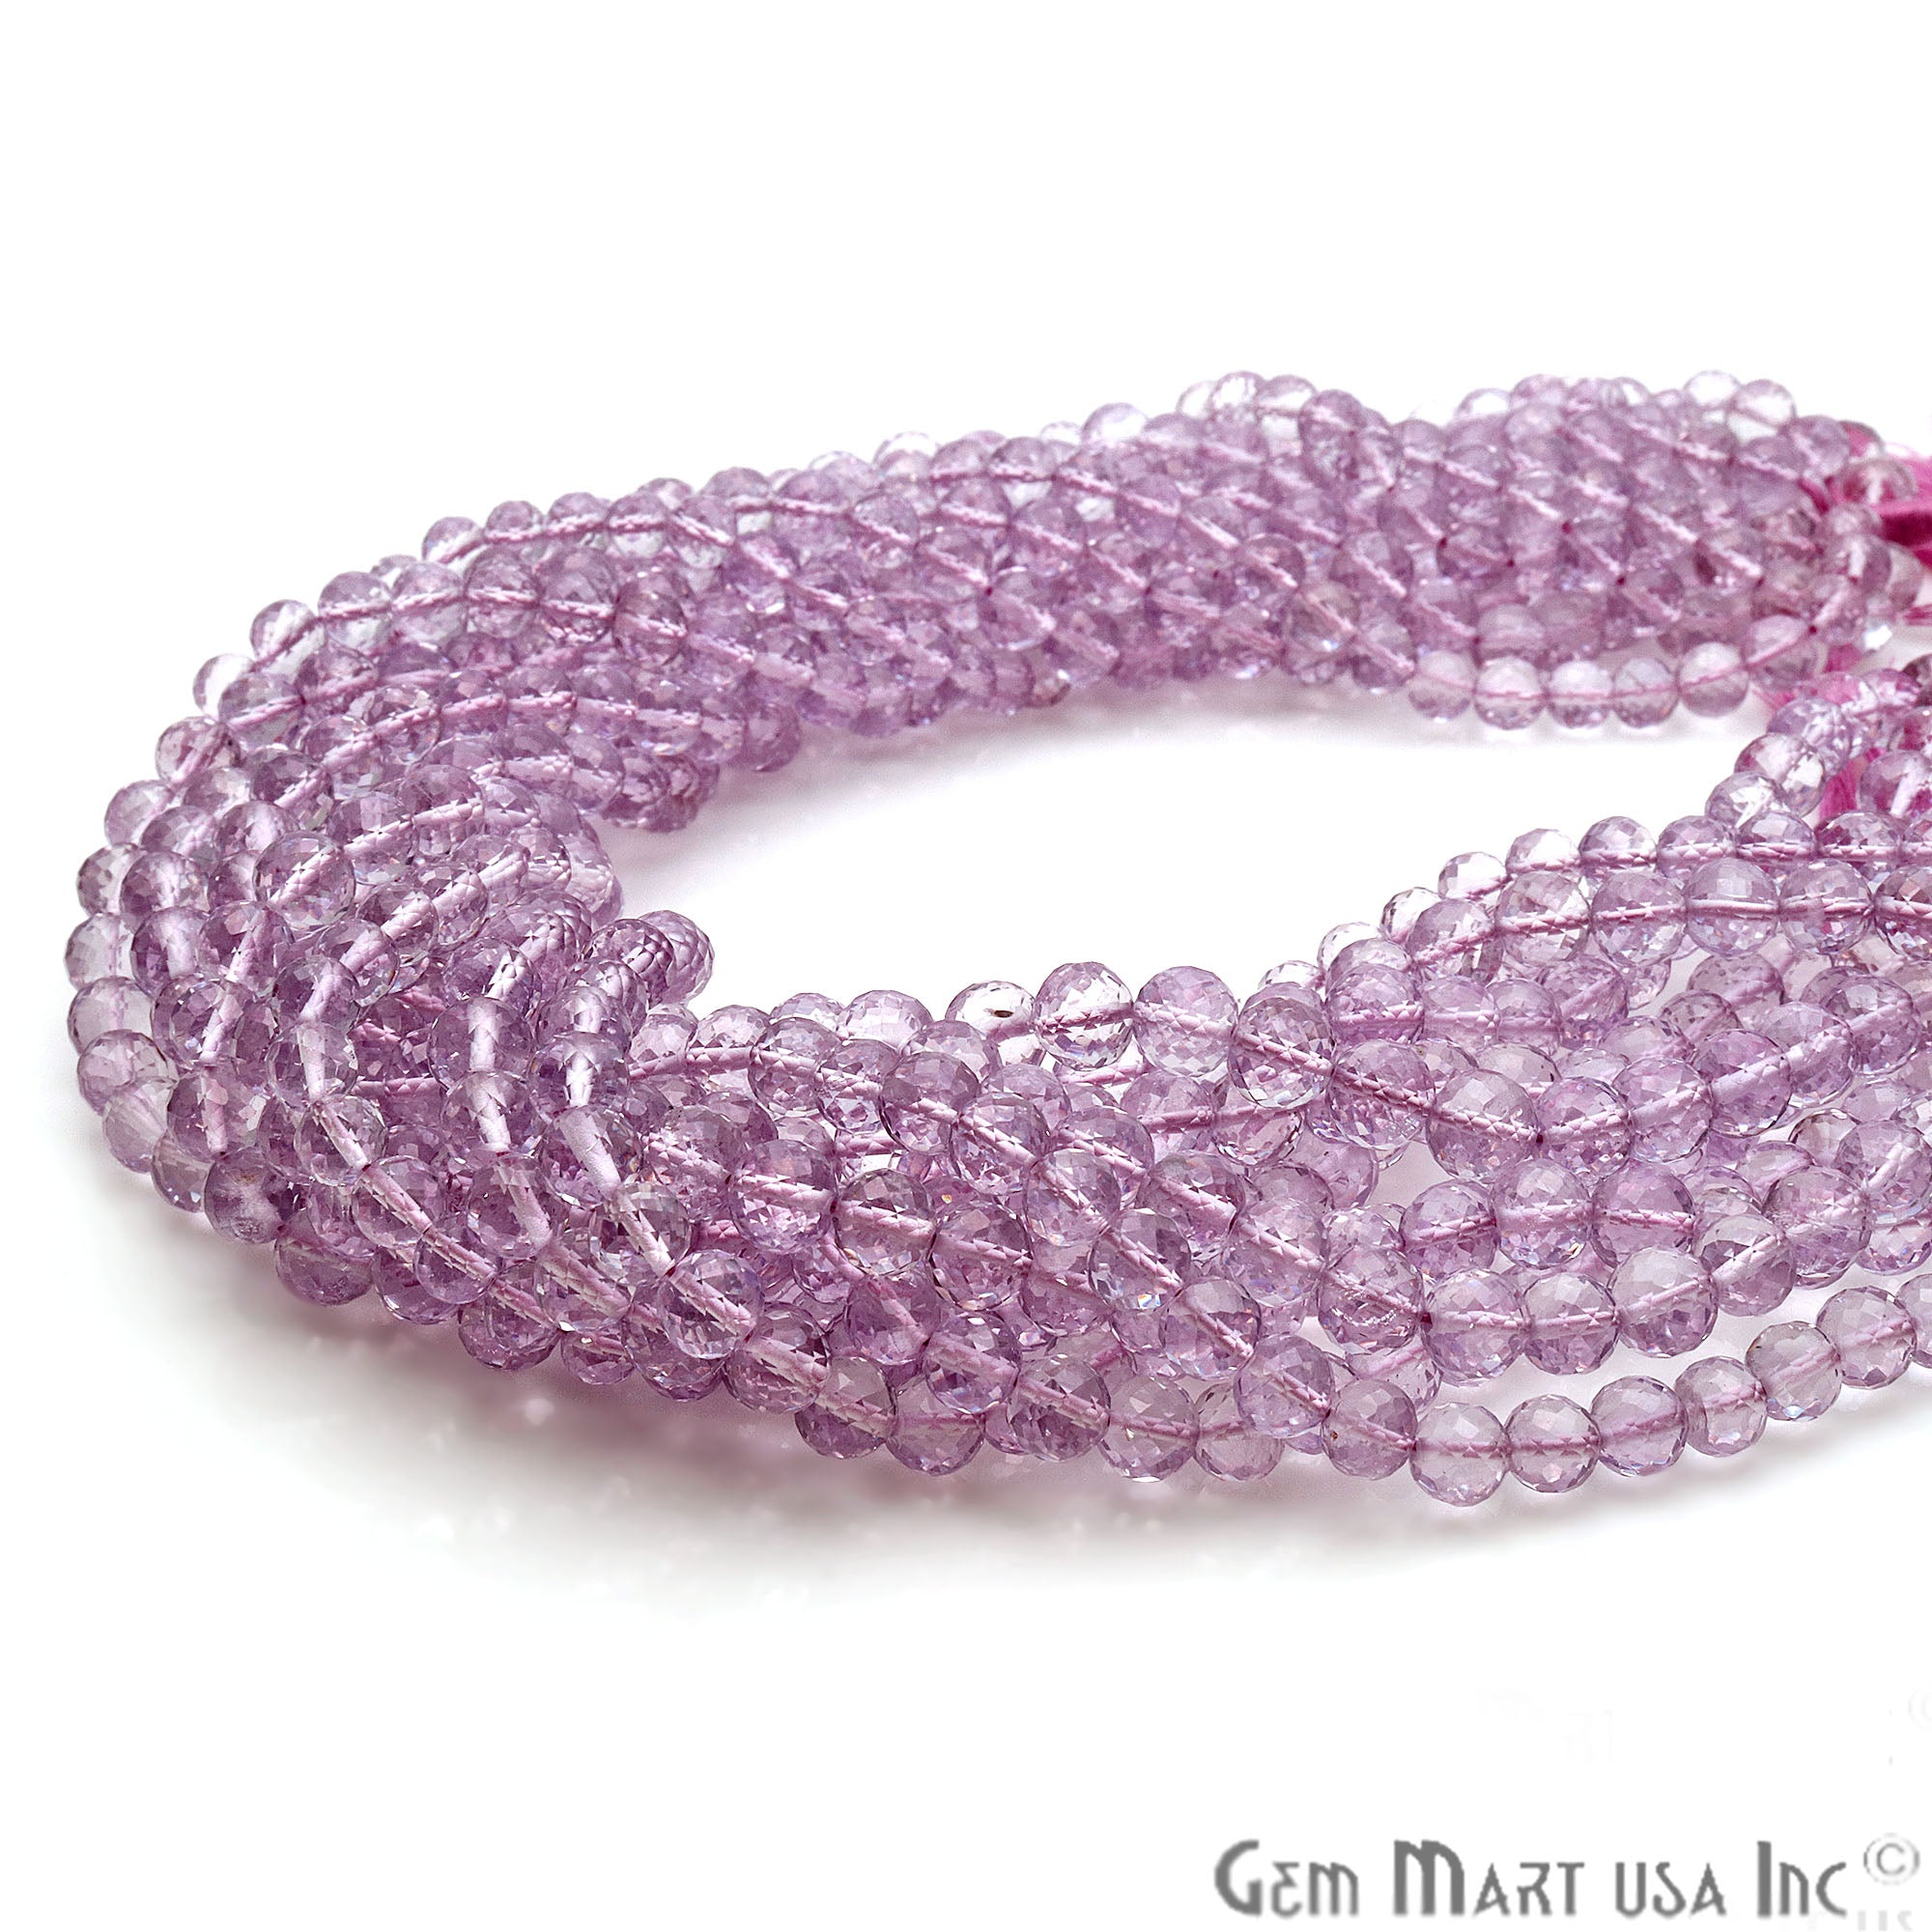 Pink Amethyst Round 6-7mm Crafting Beads Gemstone Strands 14INCH - GemMartUSA